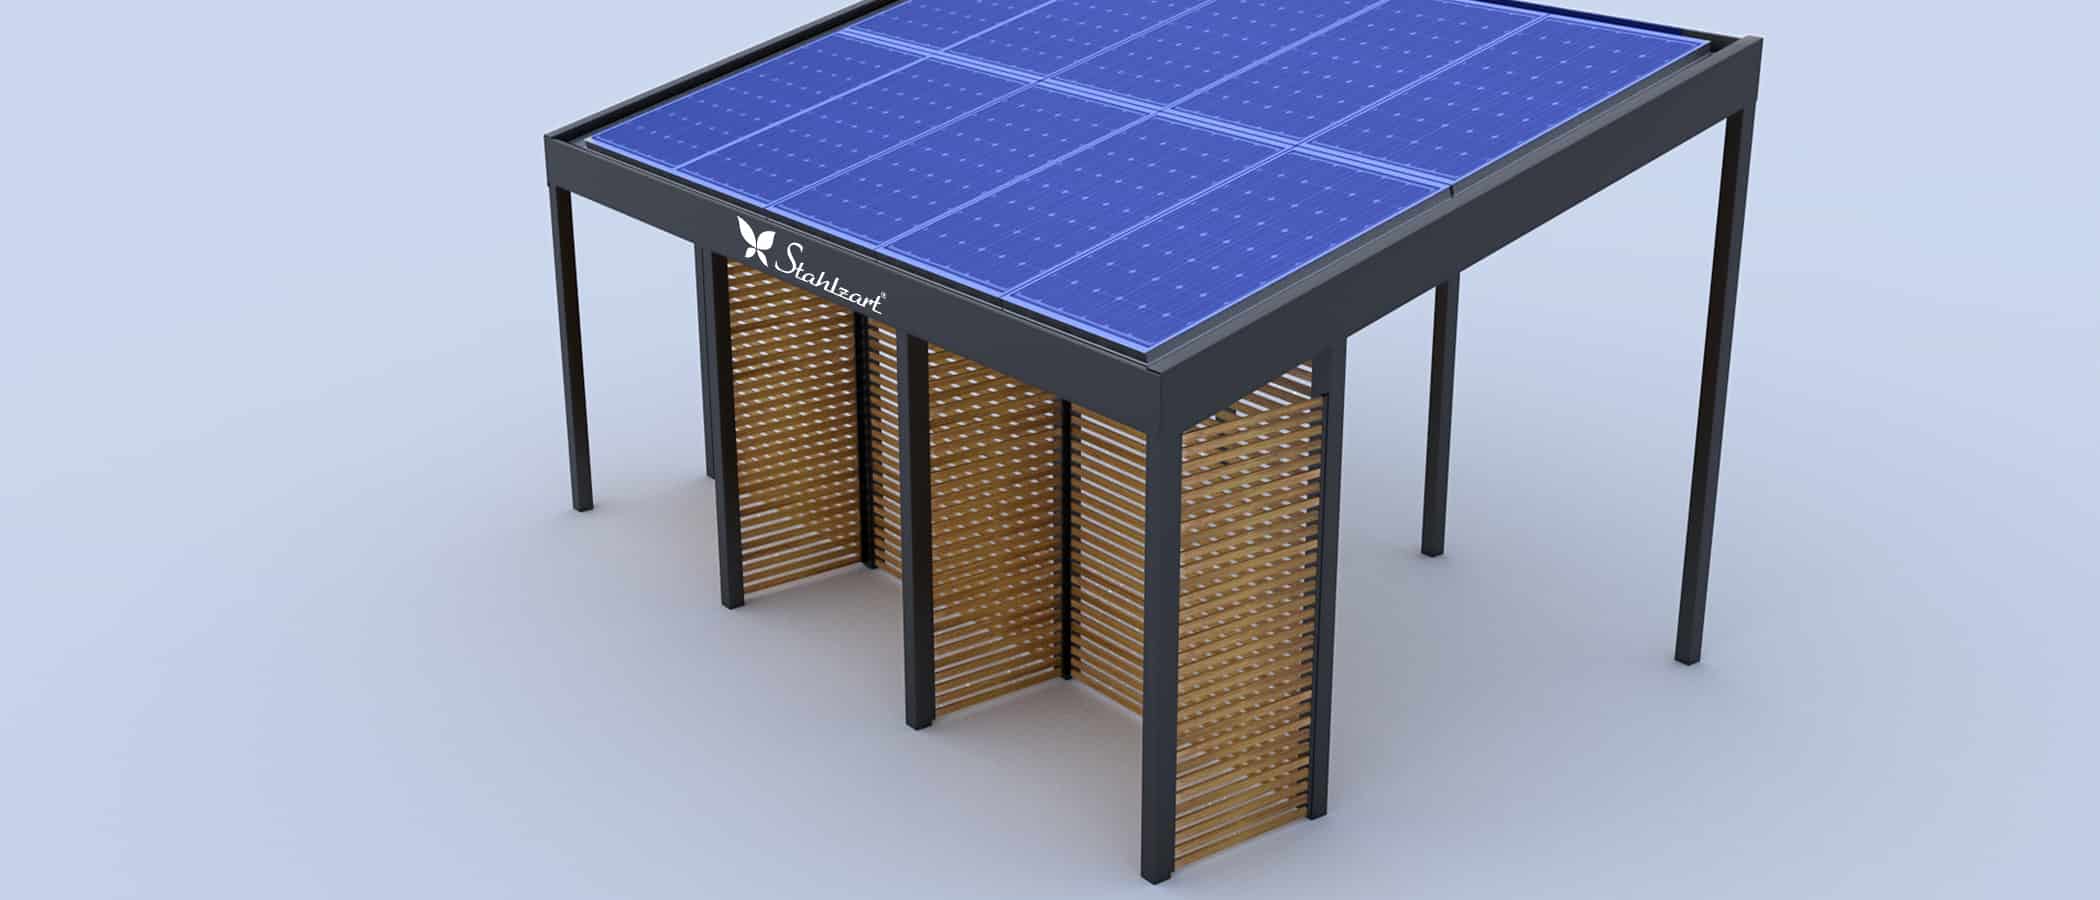 stahlzart-solar-carport-carports-e-fahrzeuge-solaranlage-strom-solarcarport-e-auto-kosten-30-jahre-carportdach-photovoltaik-schraegdach-laerche-seitenwand-vorteile-fragen-holz-metall-stahl